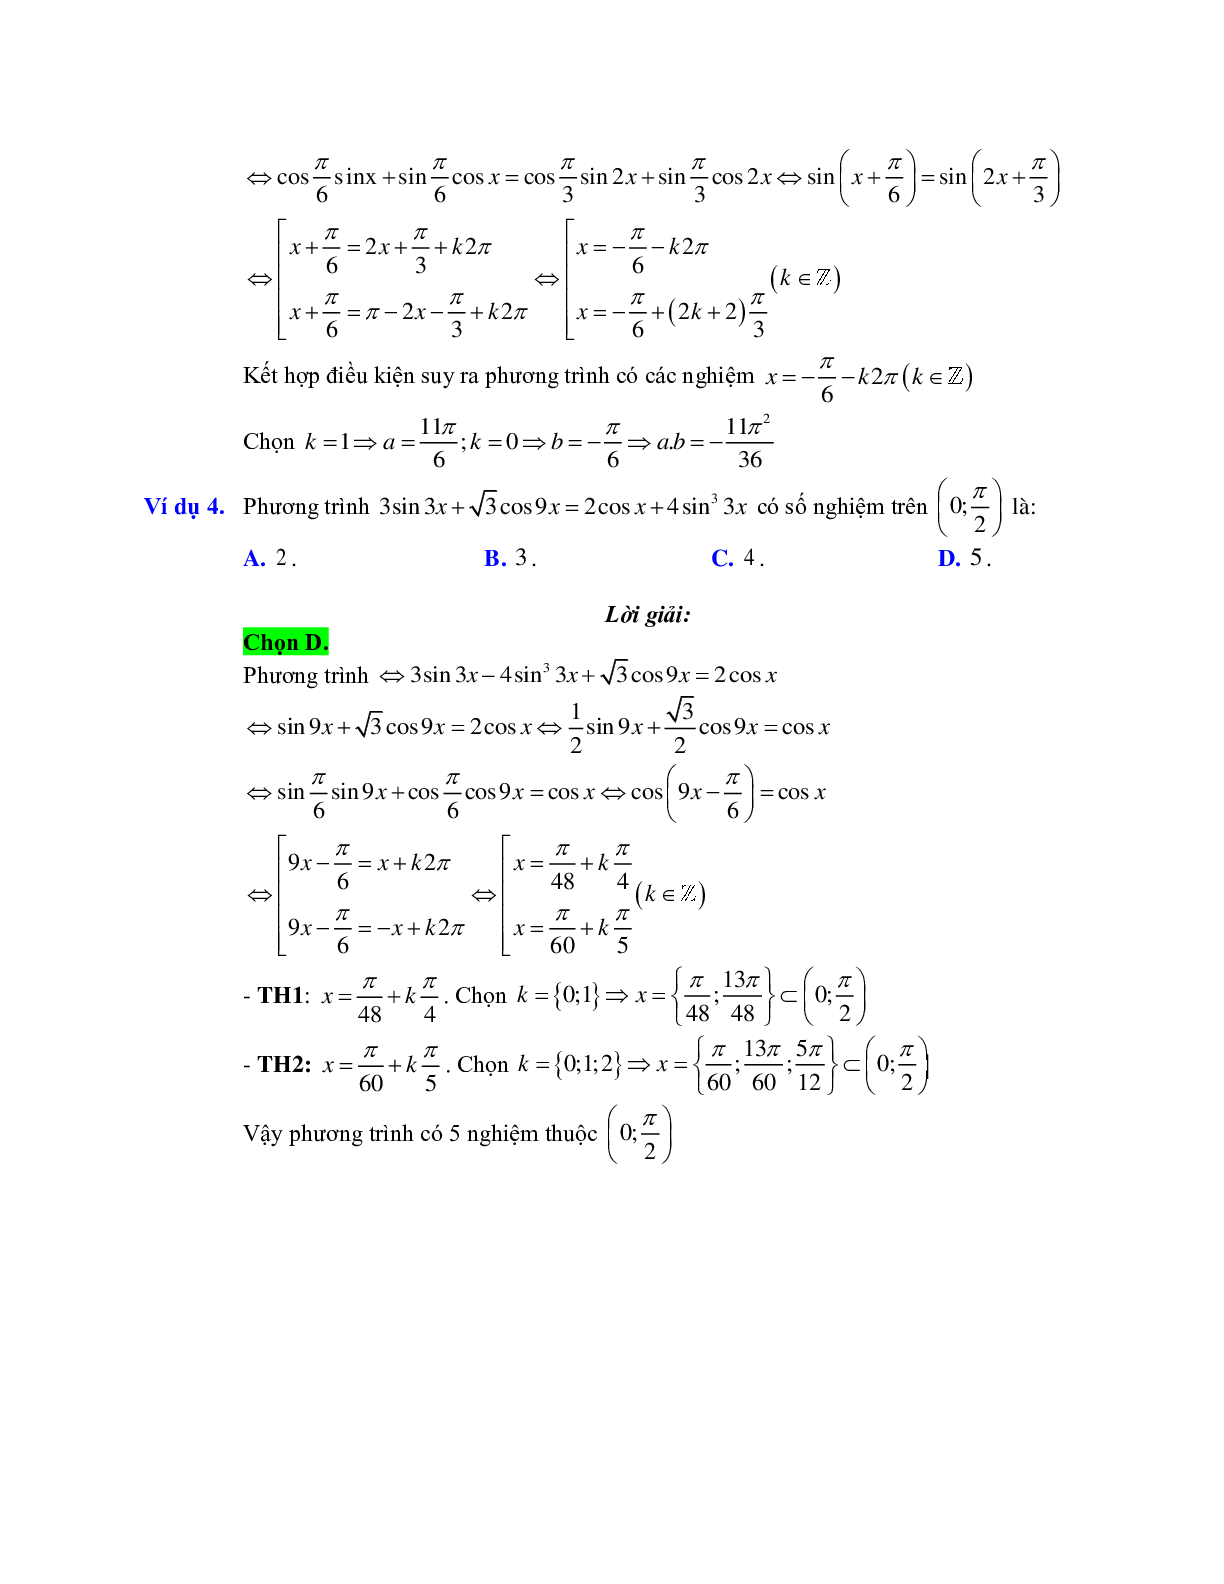 Cách giải phương trình bậc nhất đối với sinx, cosx (trang 3)